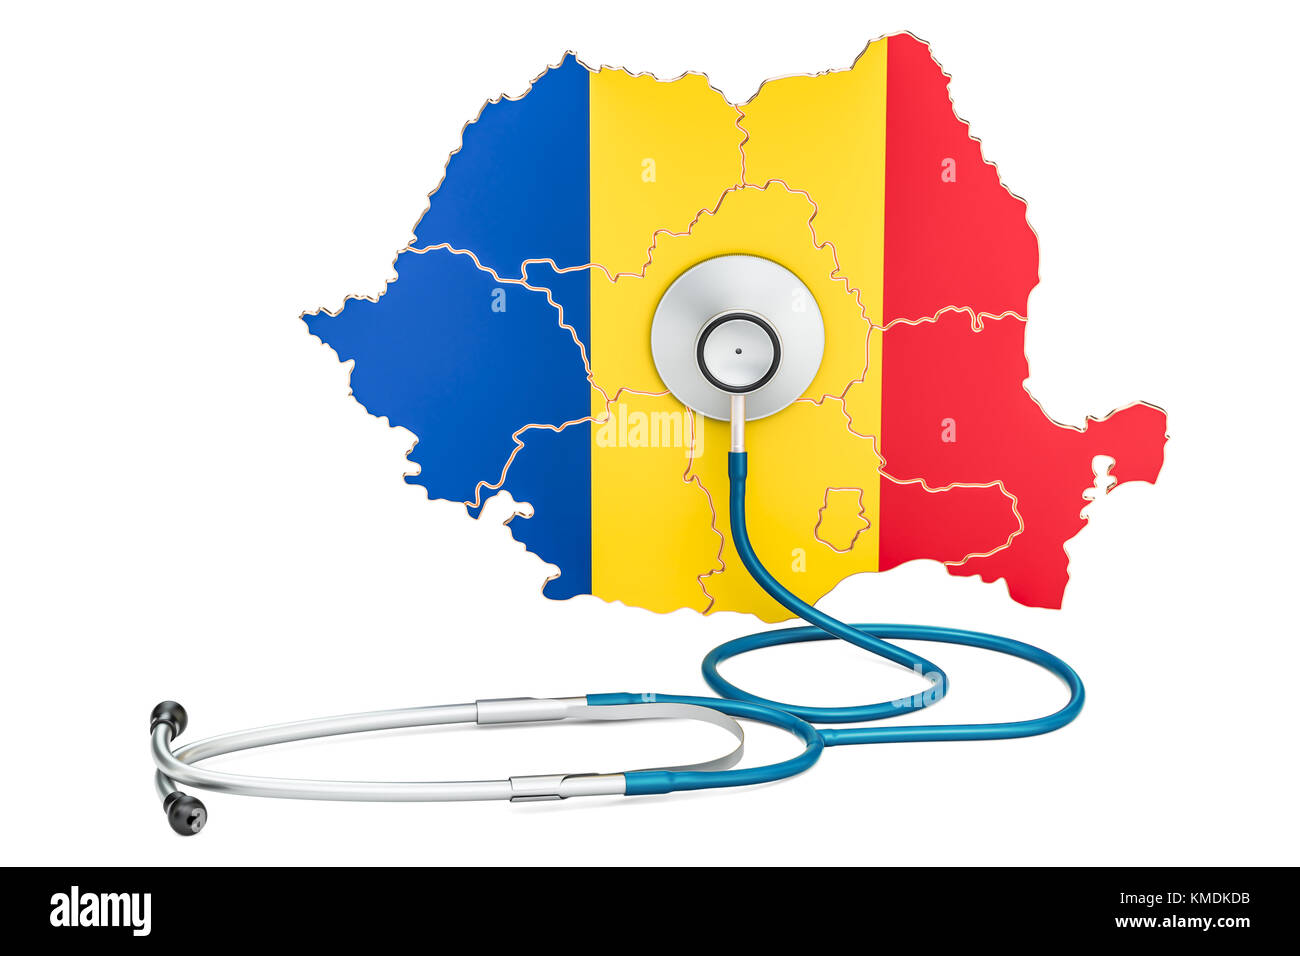 Rumänische Karte mit Stethoskop, national Health Care Concept, 3D-Rendering Stockfoto